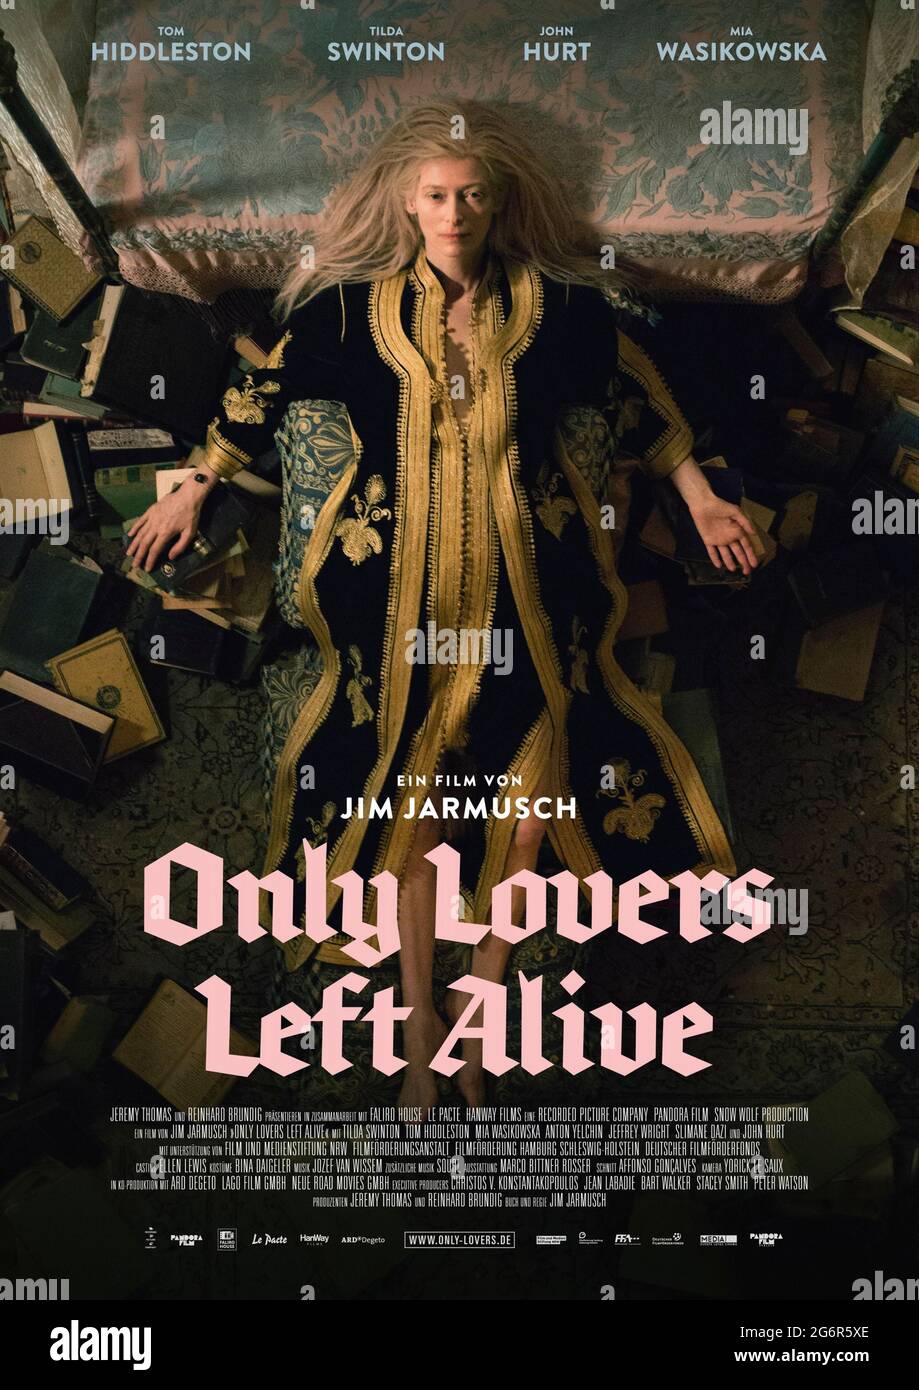 Only Lovers Left Alive (2013) unter der Regie von Jim Jarmusch mit Tilda Swinton, Tom Hiddleston, Mia Wasikowska und Anton Yelchin. Ein deprimierter Vampir-Reifen des Lebens vereint sich mit seinem langjährigen Vampir-Liebhaber, komplett mit einem meisterhaften Einsatz von Locations und Musik. Stockfoto